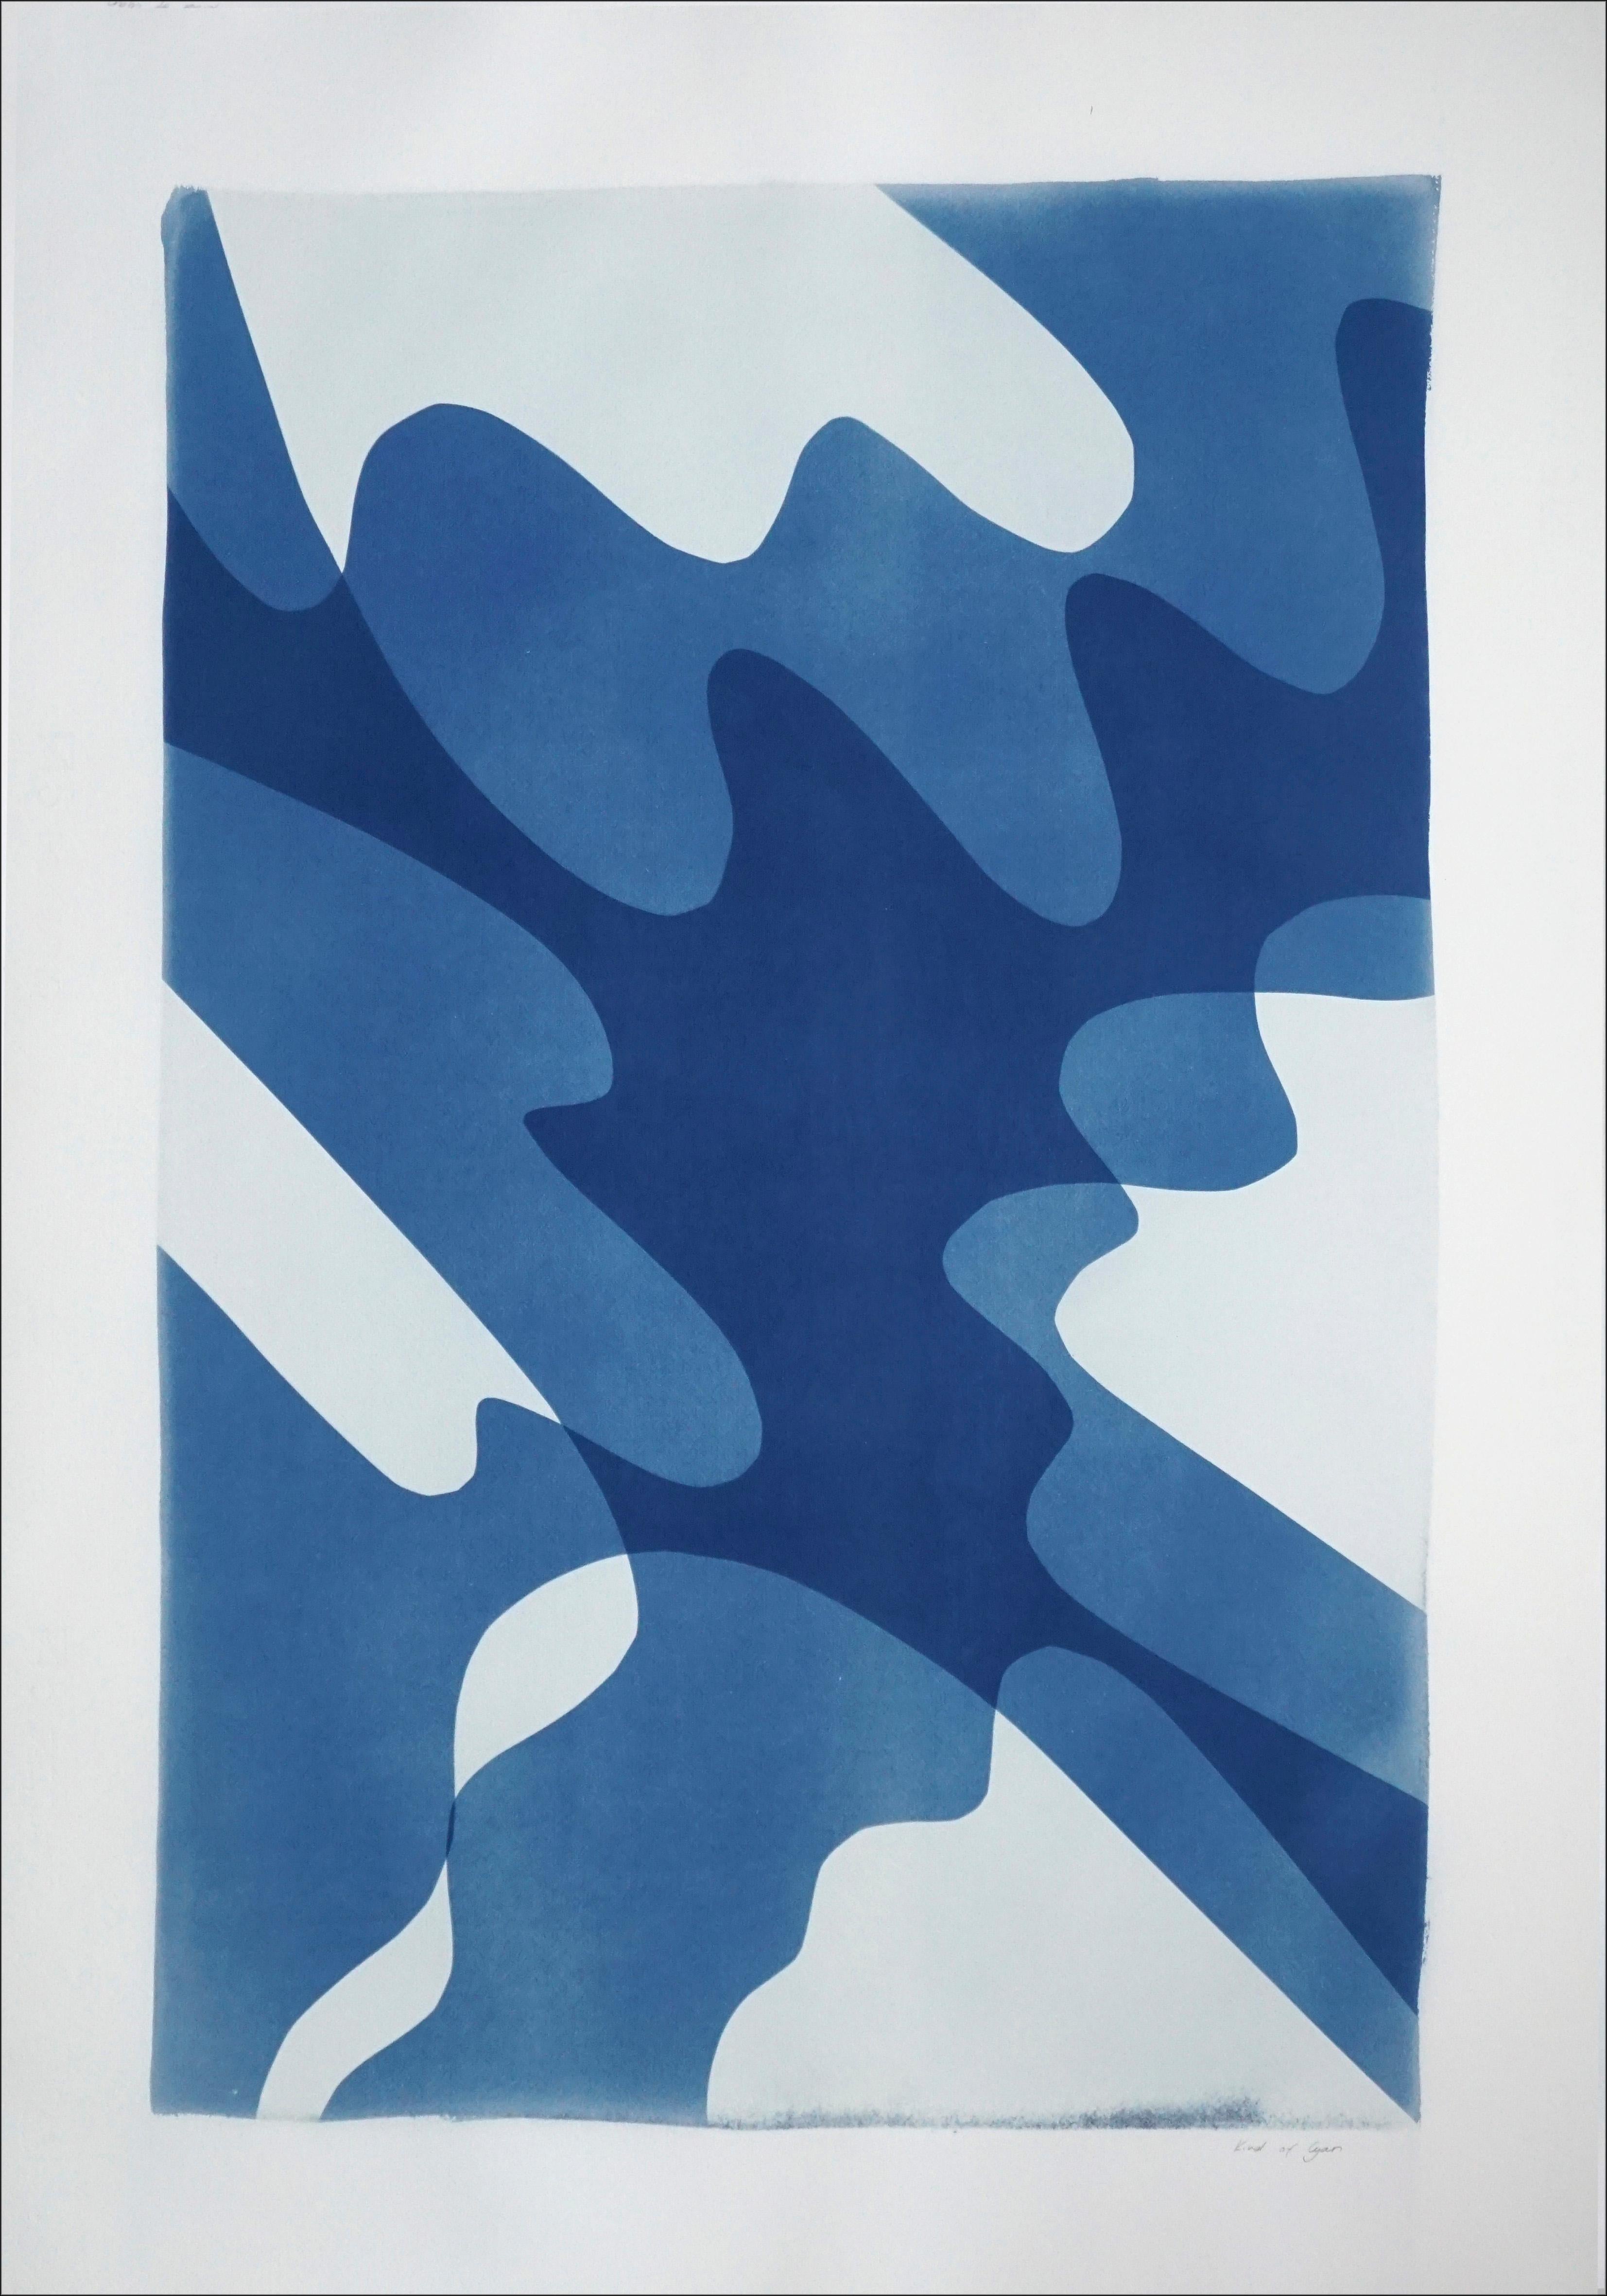 Shaky Shadows, handgefertigte Monotypie minimalistischer abstrakter Formen und Lagen in Blau